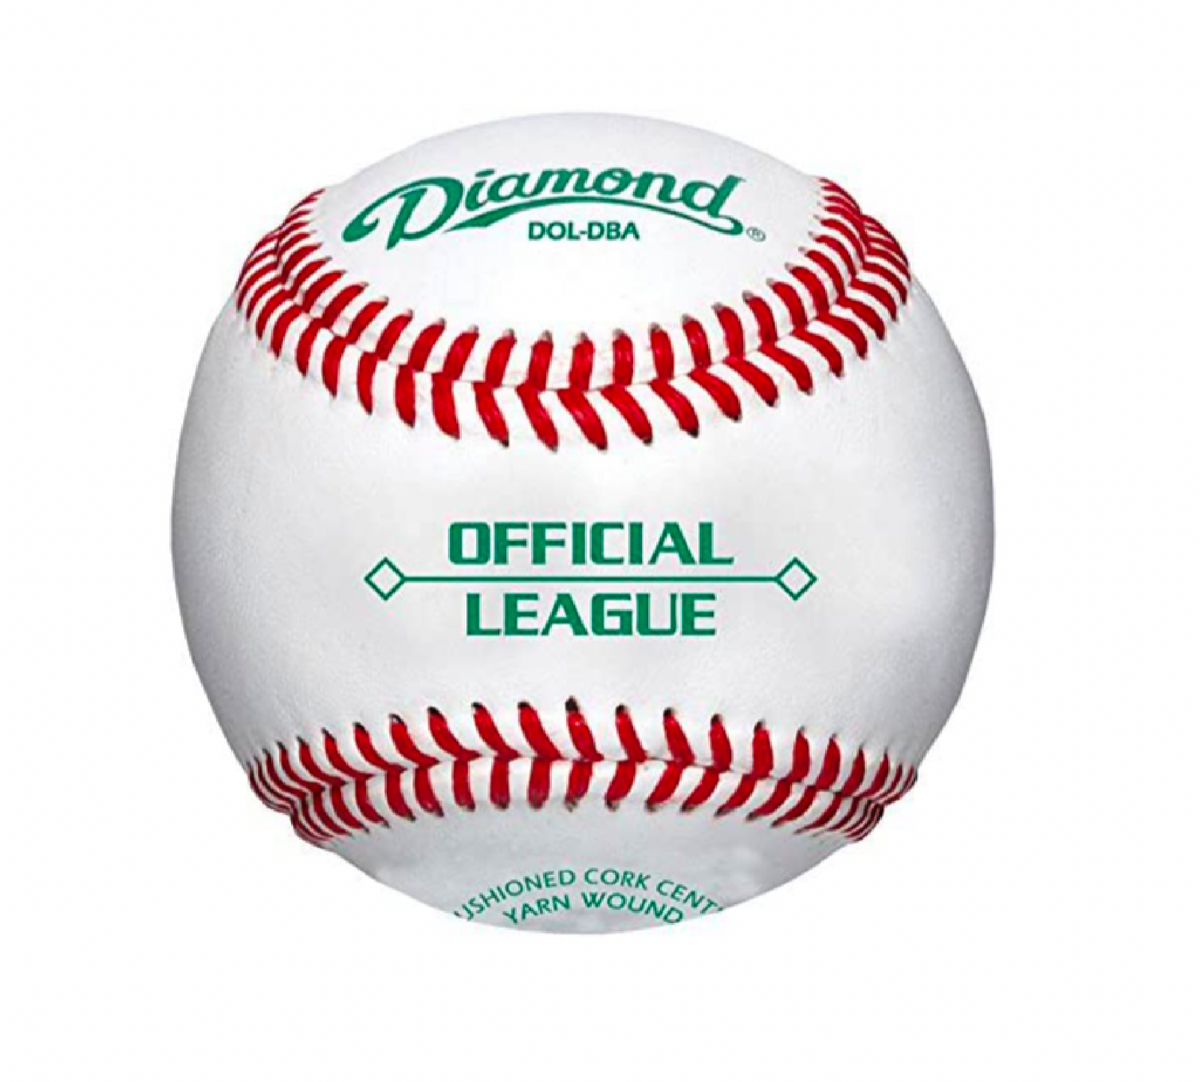 Deportes Diamante | DOL-DBA | Pelotas de béisbol oficiales de la liga Duracover | 1 docena de bolas